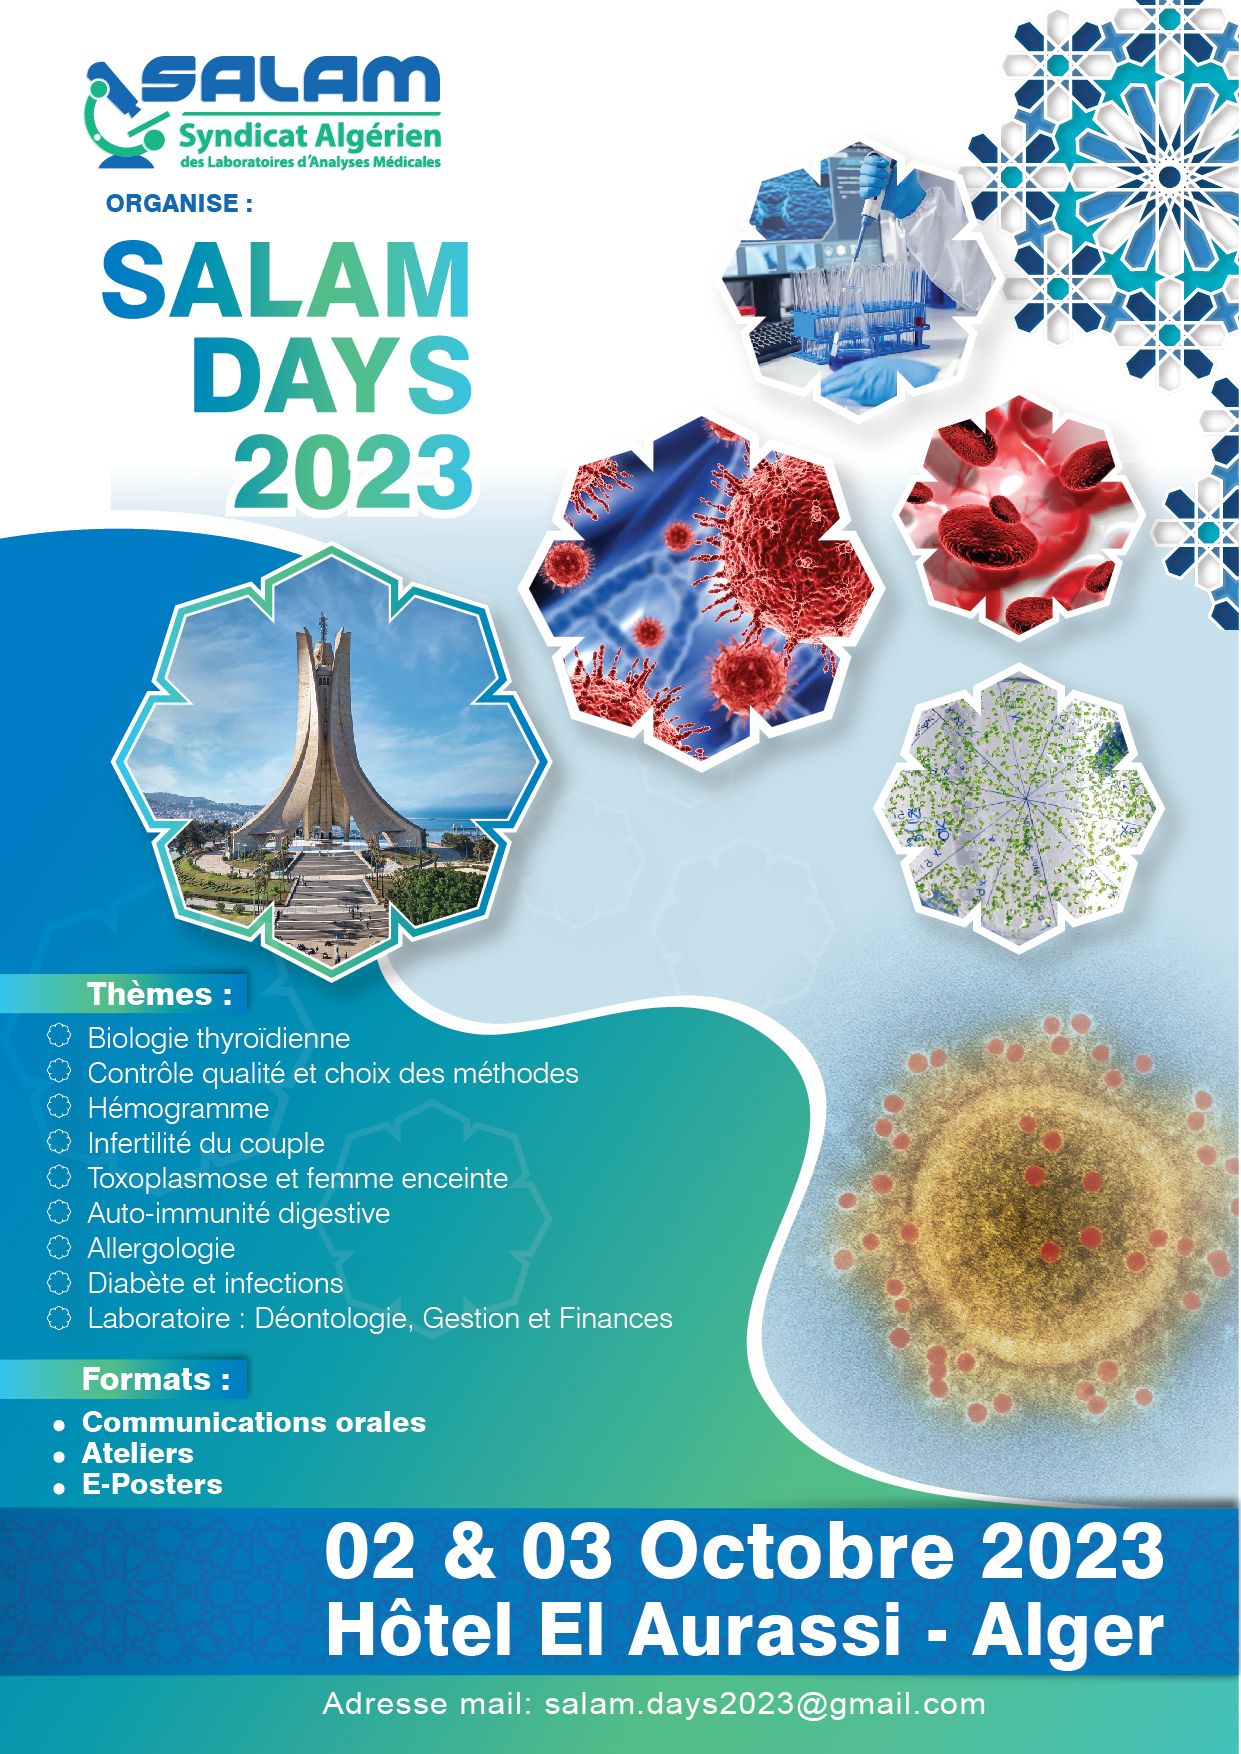 2 éme édition  SALAM DAYS 2023 du Syndicat Algérien des Laboratoires d’Analyses Médicales  les 02 & 03 Octobre 2023 à l'Hôtel El Aurassi - Alger affiche